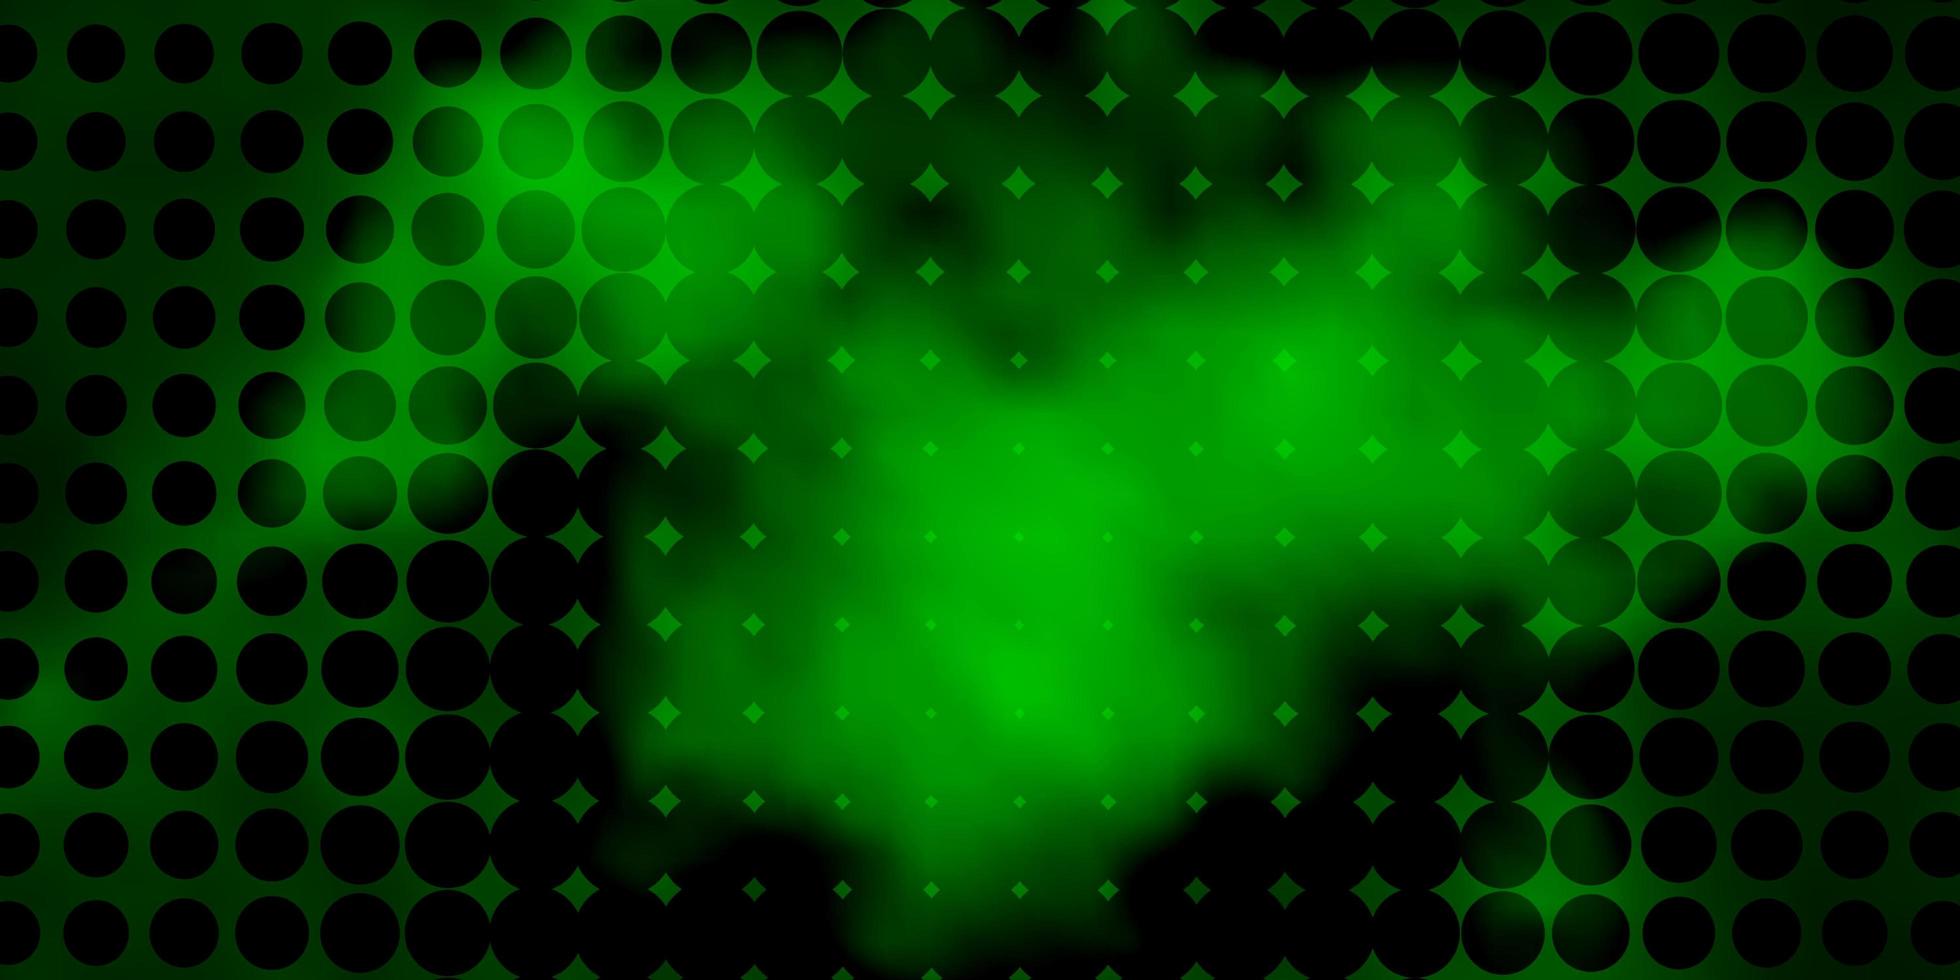 Telón de fondo de vector verde oscuro con puntos brillo ilustración abstracta con diseño de gotas de colores para carteles pancartas